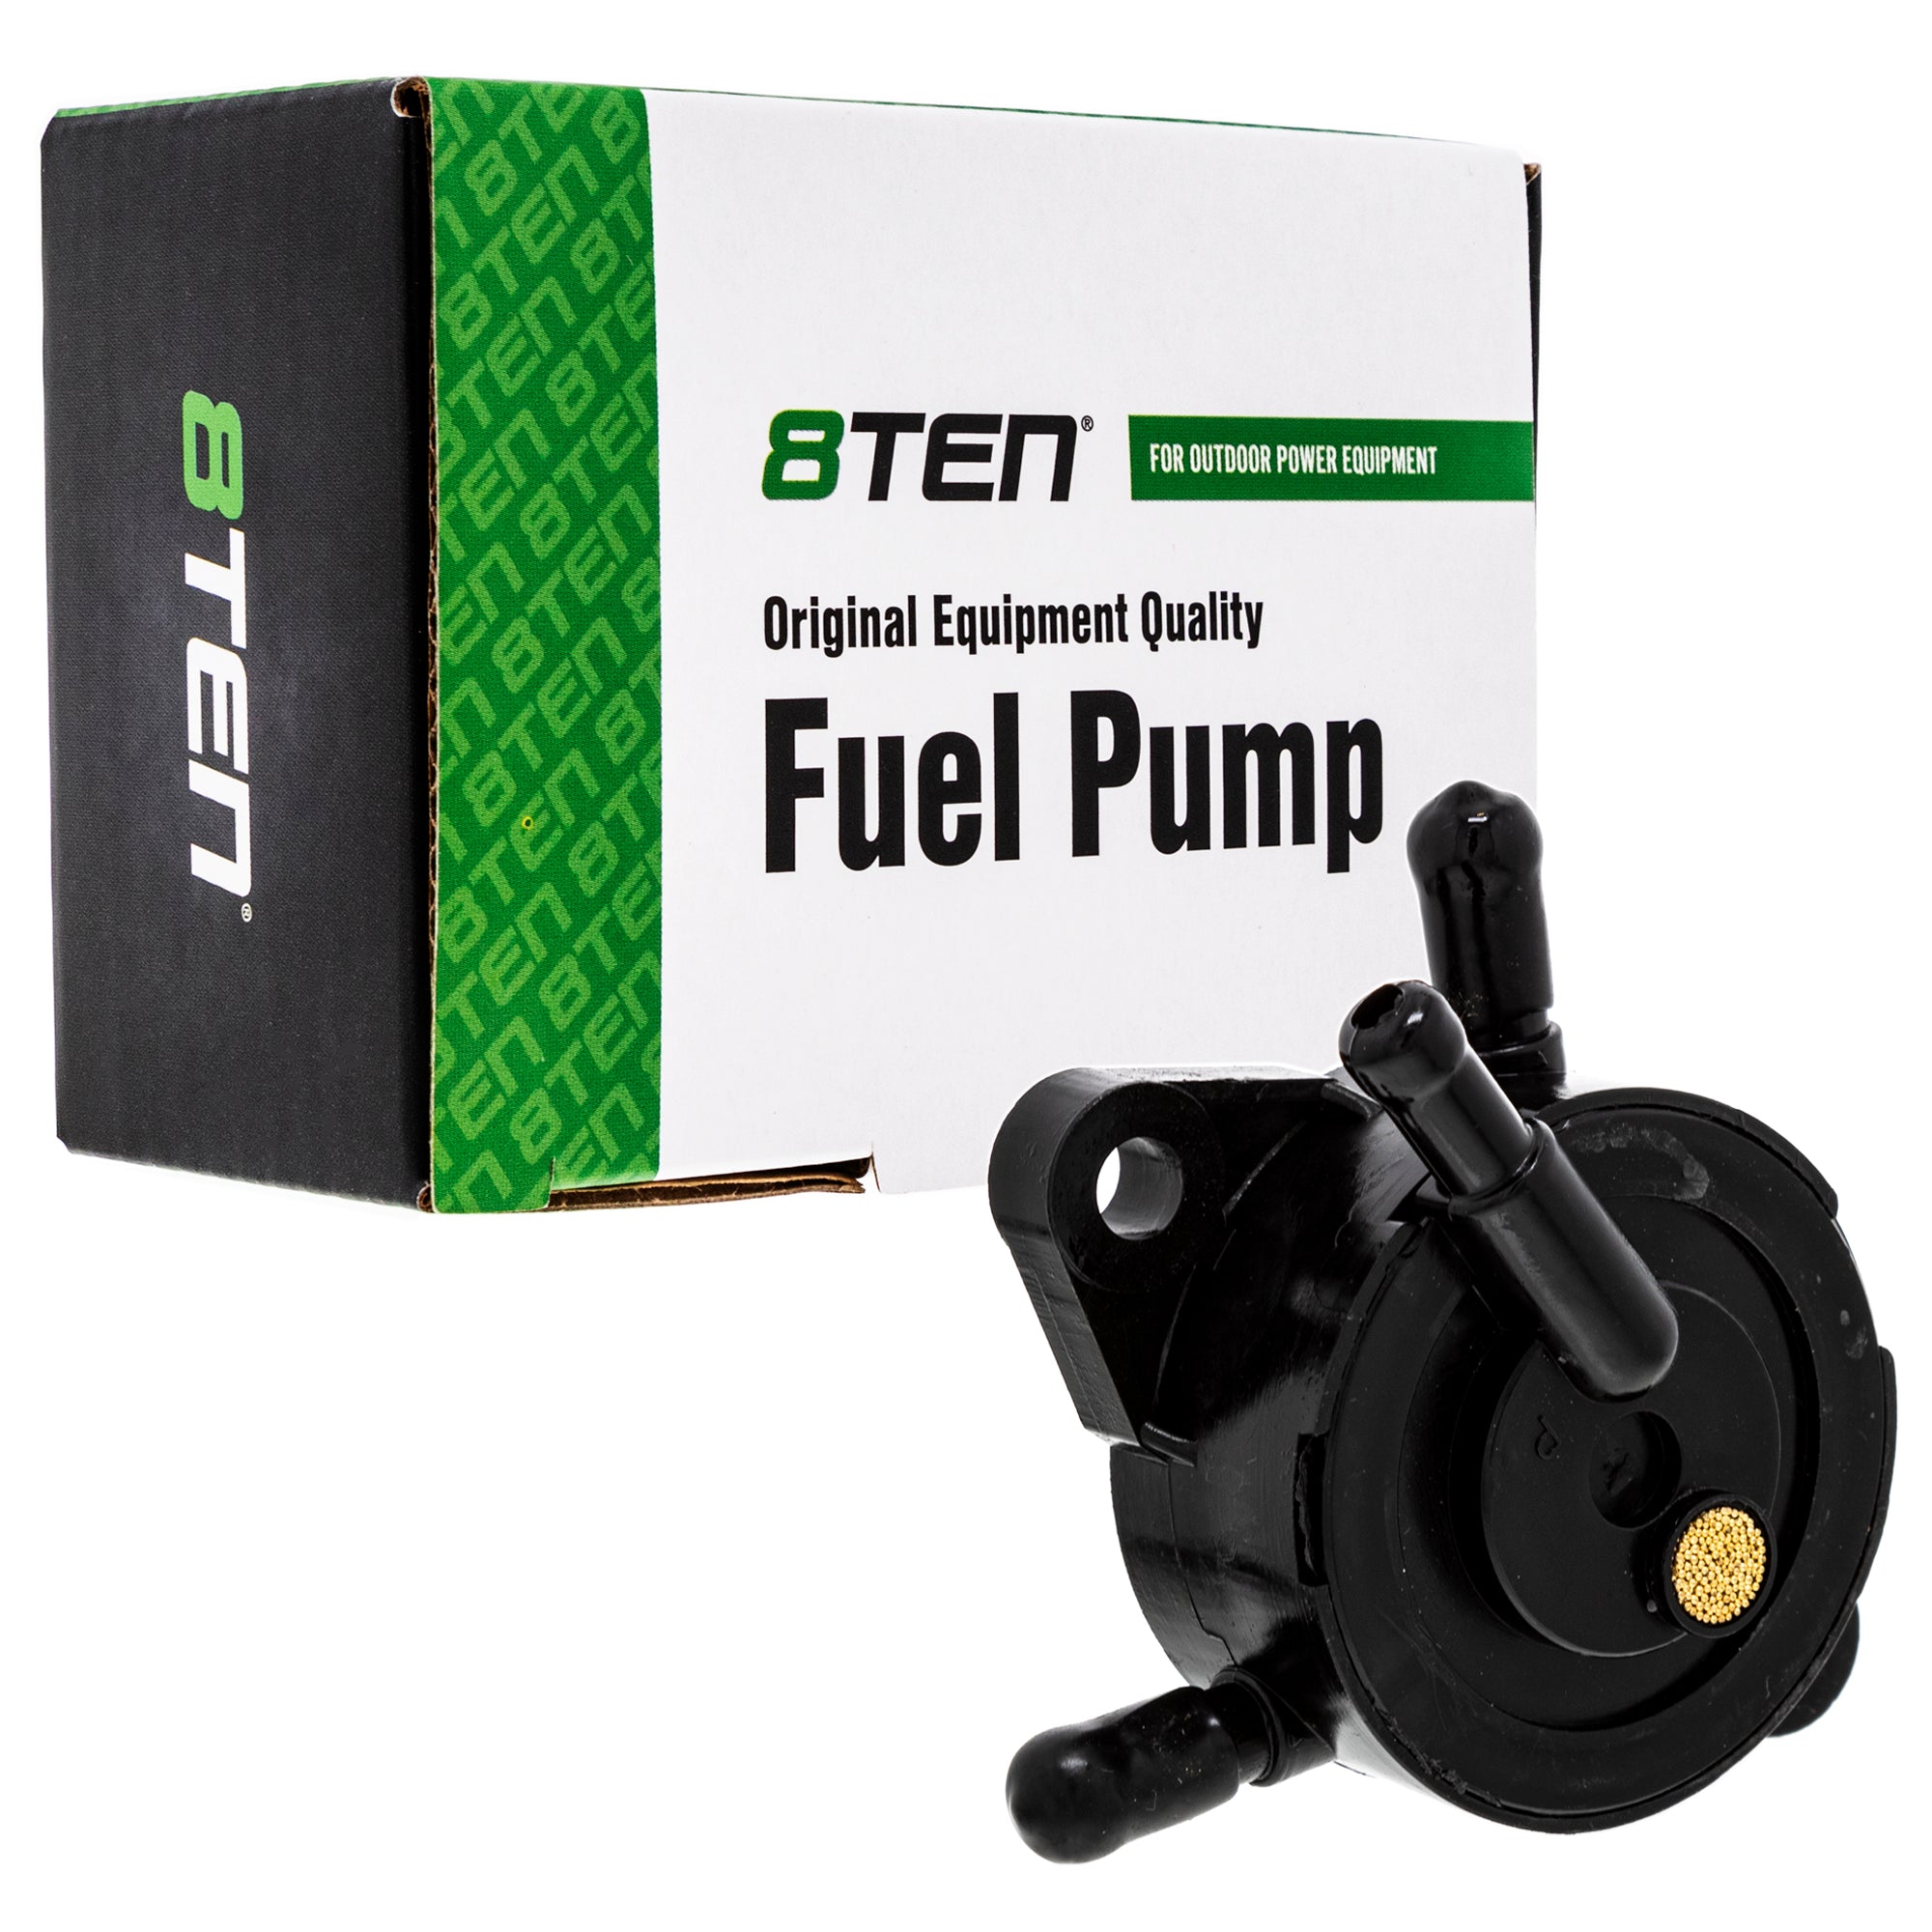 Fuel Pump Kit for Honda EX700C EU2200i EU2000i EU1000i 8TEN 519-CFP2221A